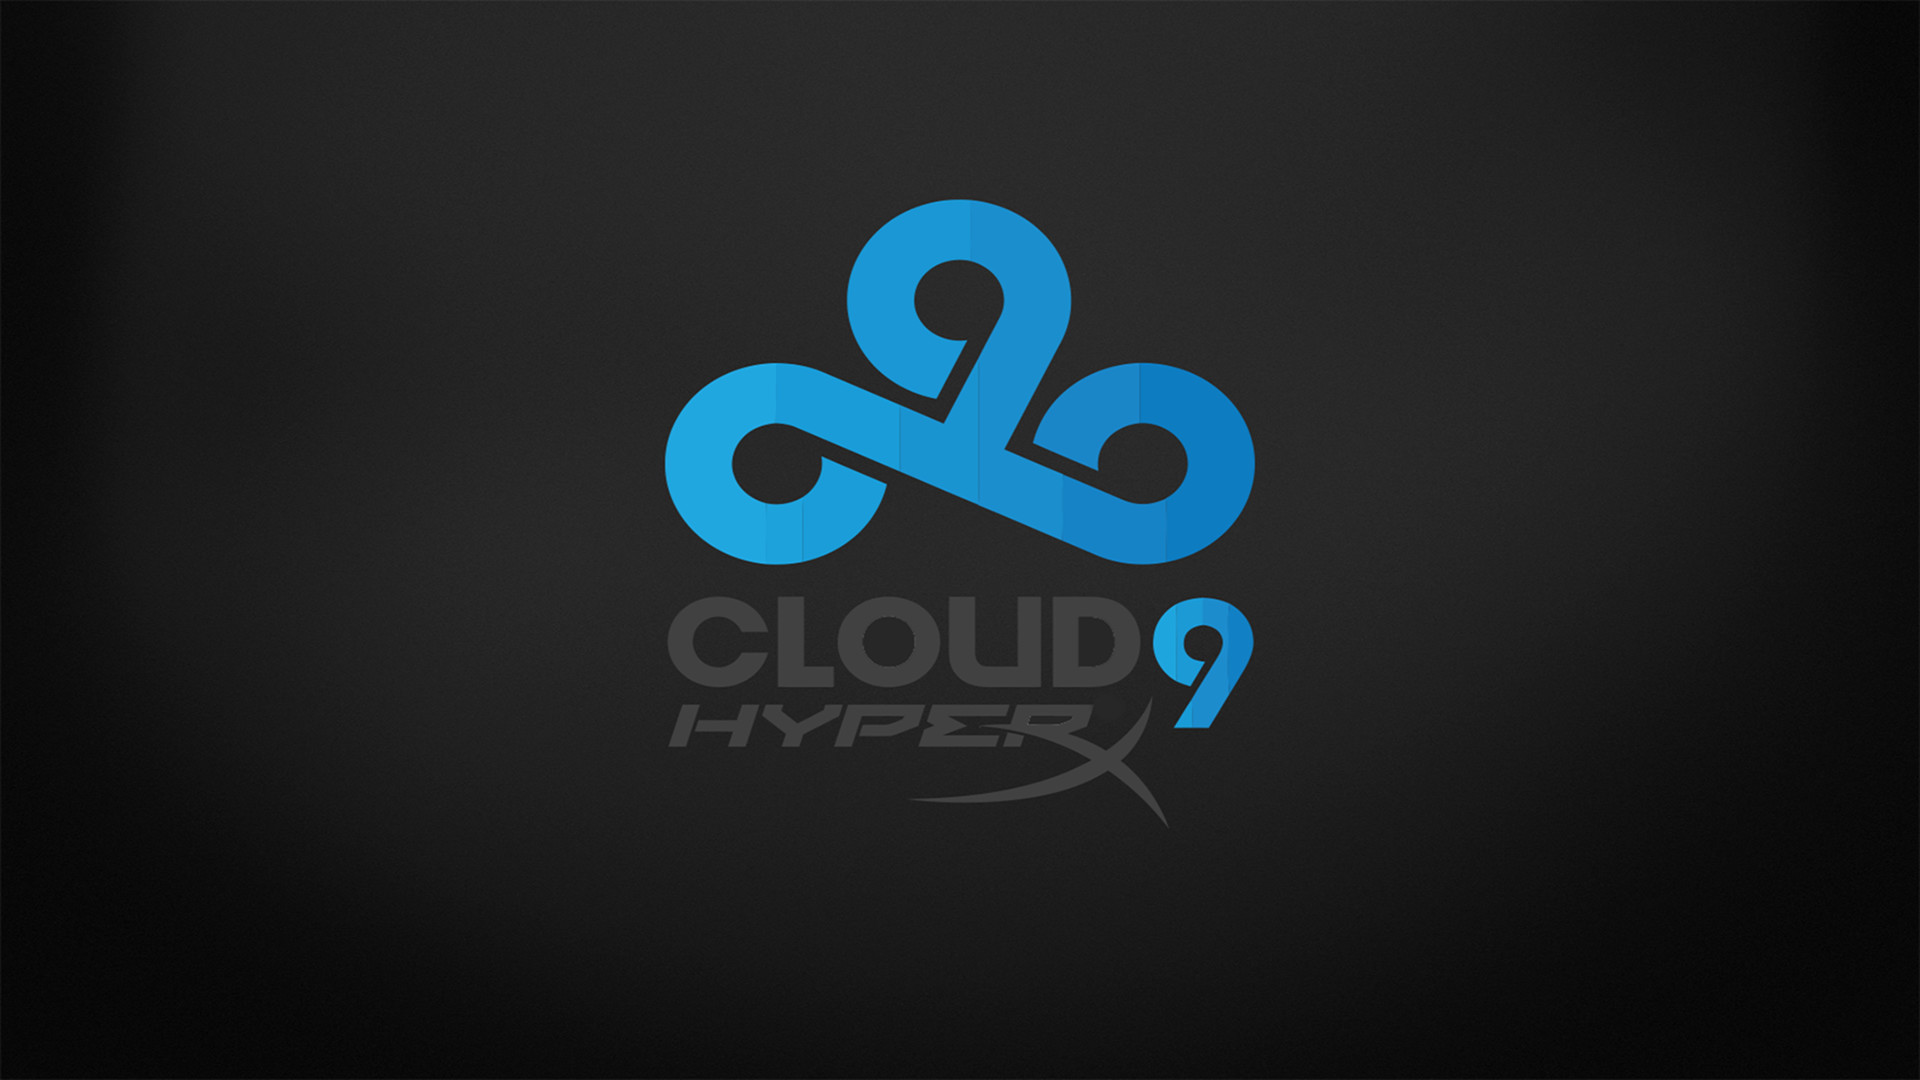 Cloud Csgo HD Wallpaper Image